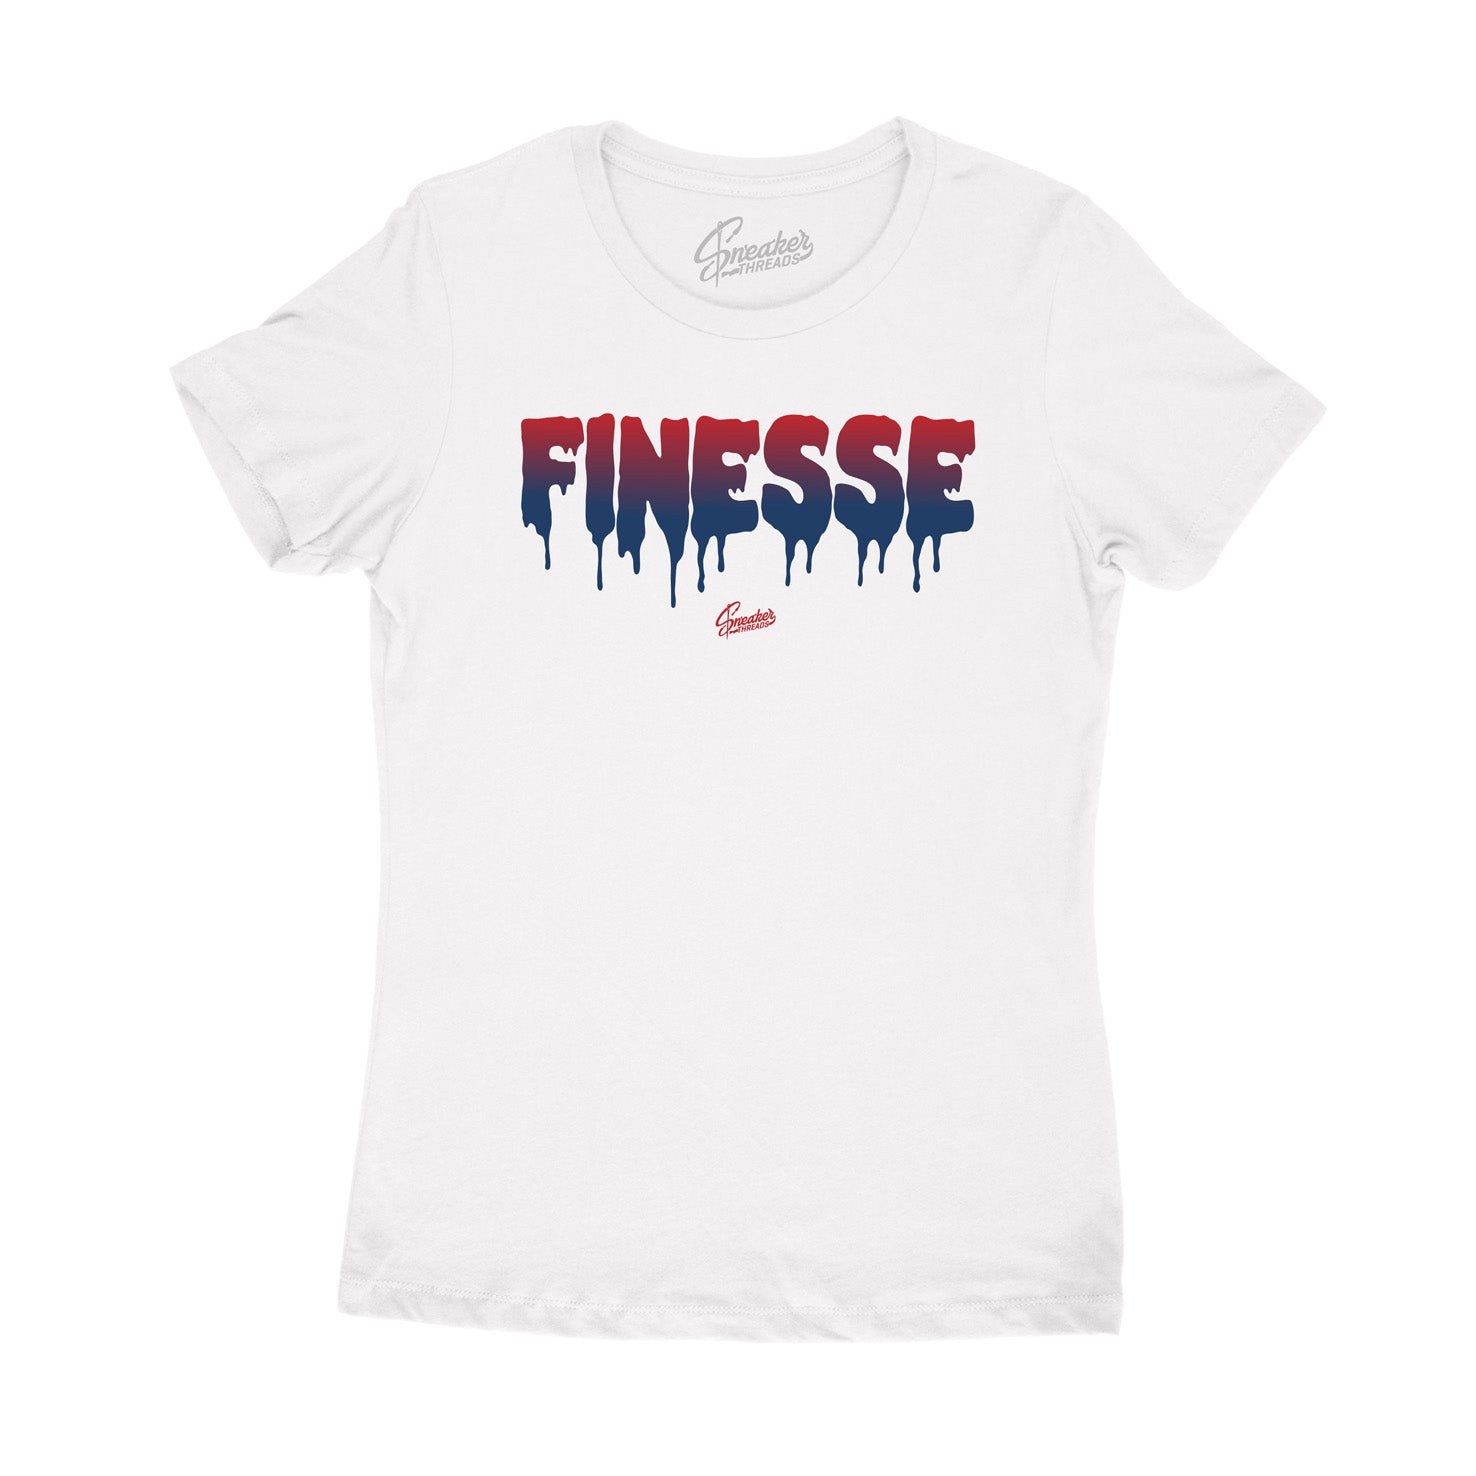 Retro 4 Fiba Finesse shirt for women to 